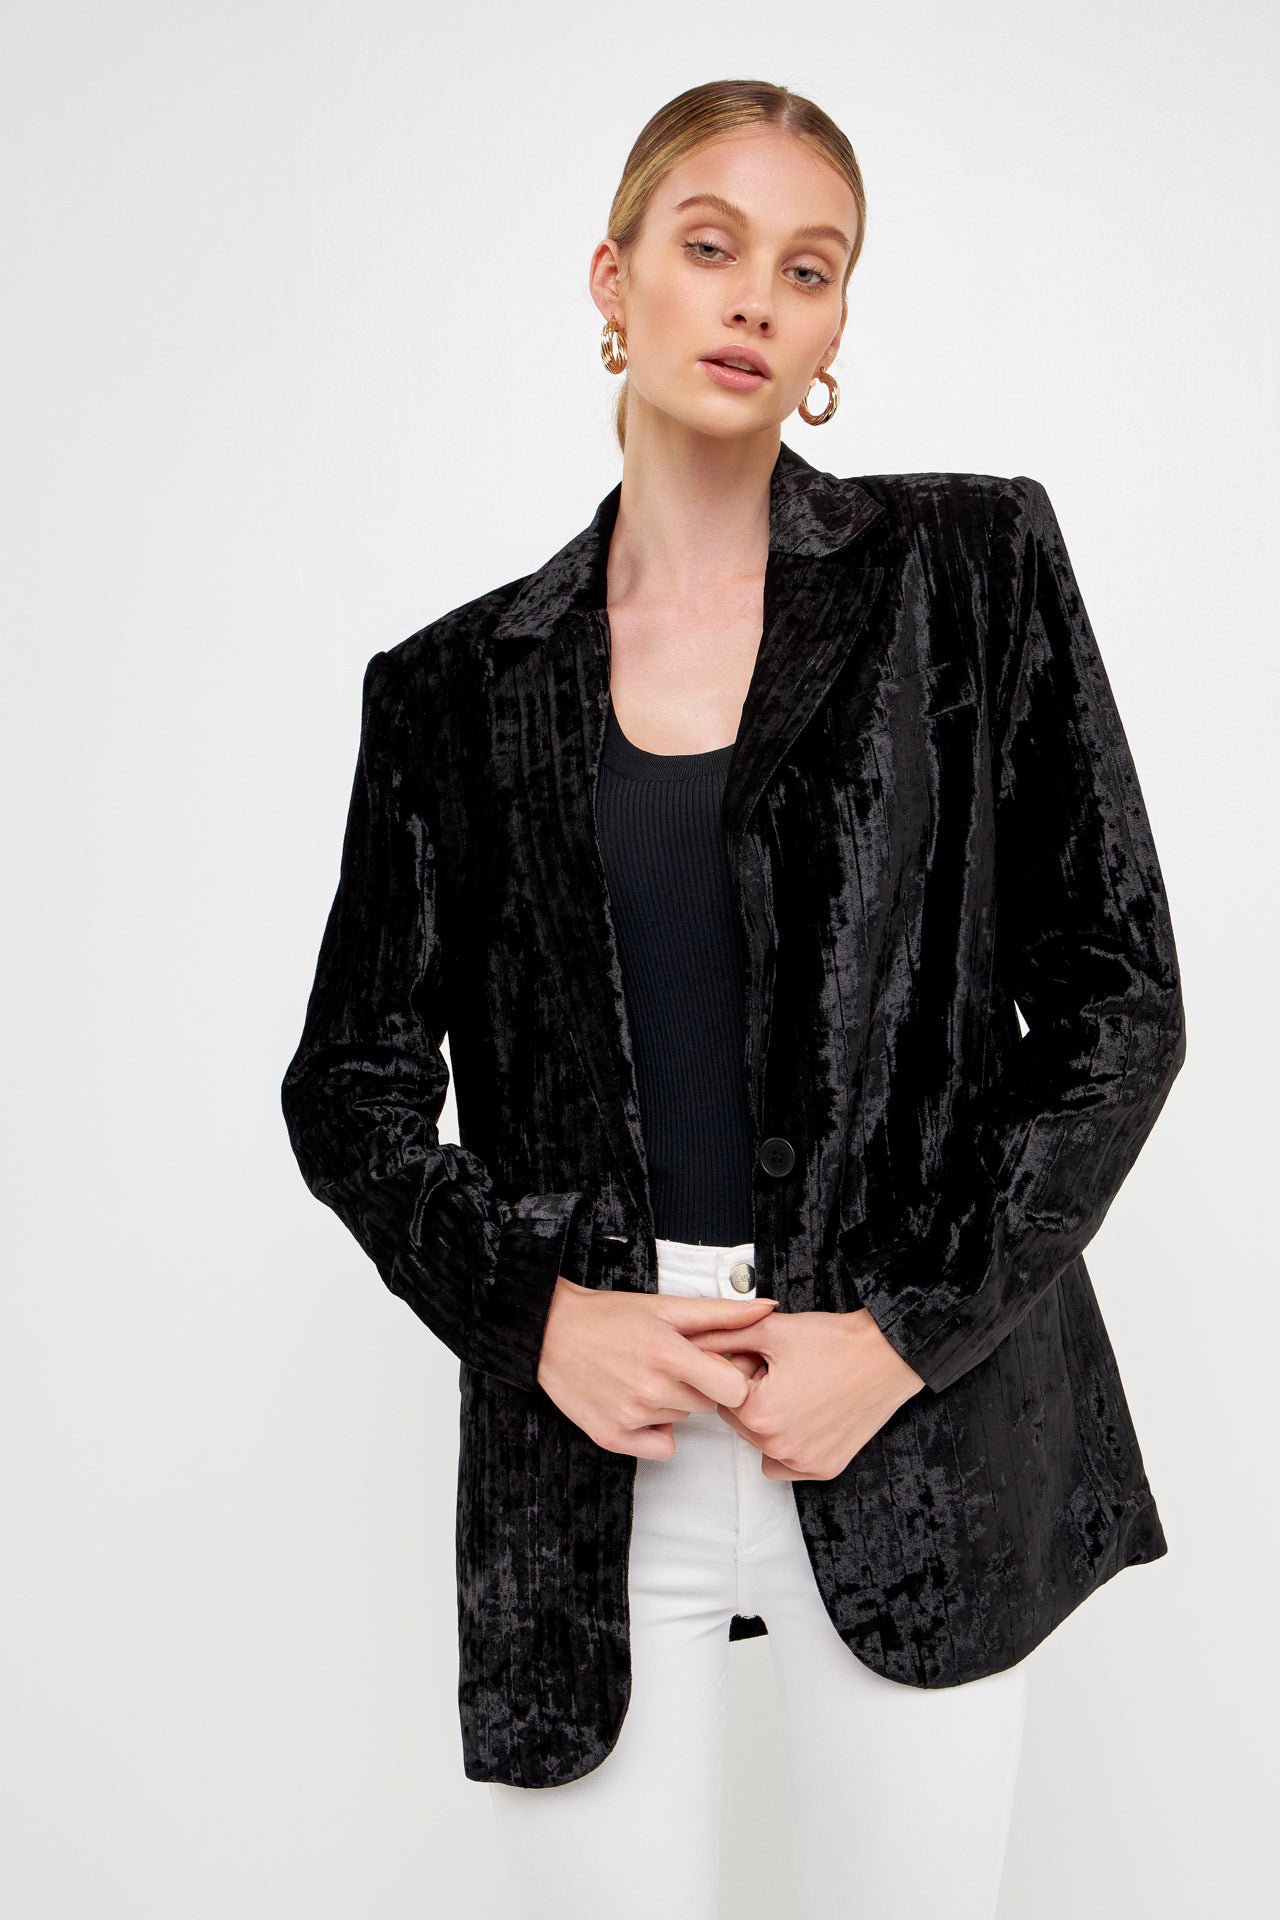 Black Velvet Jacket,multi Colour Floral Embroidery, Embellished Formal  Blazer for Women, Plus Size Jacket -  Hong Kong